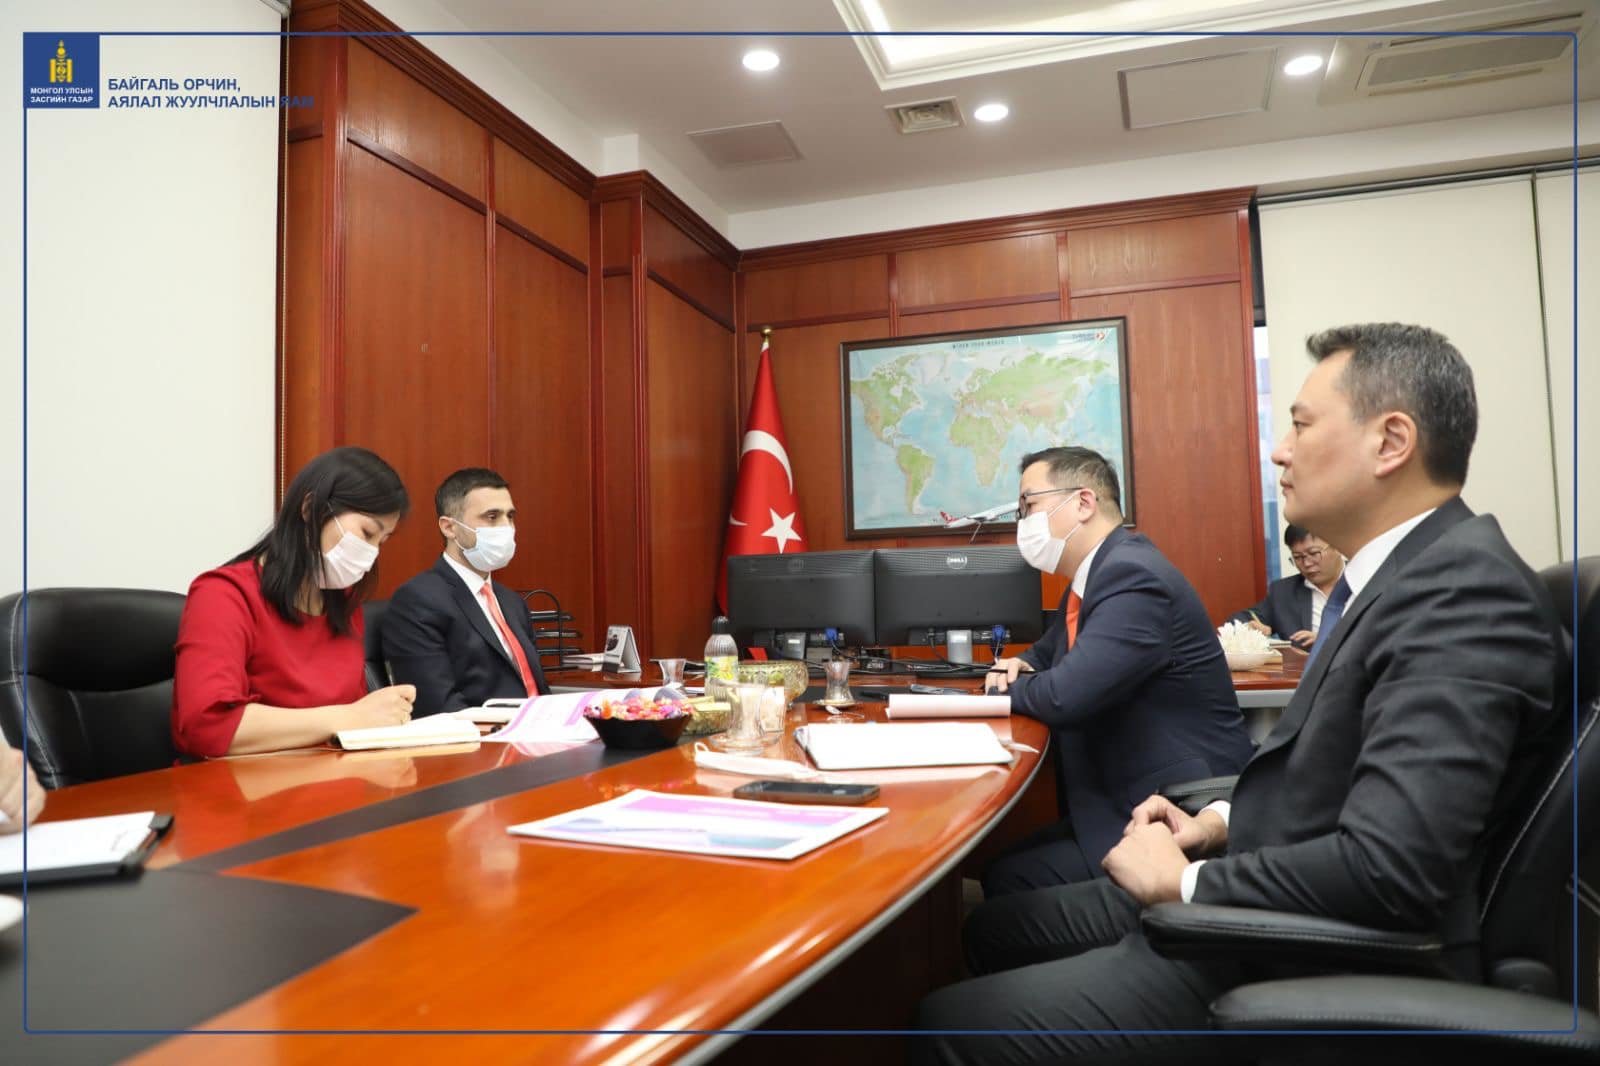 “Туркиш Эйрлайнс” компани Европ-Азийн аяллын багцад Улаанбаатарыг оруулах санал тавьжээ